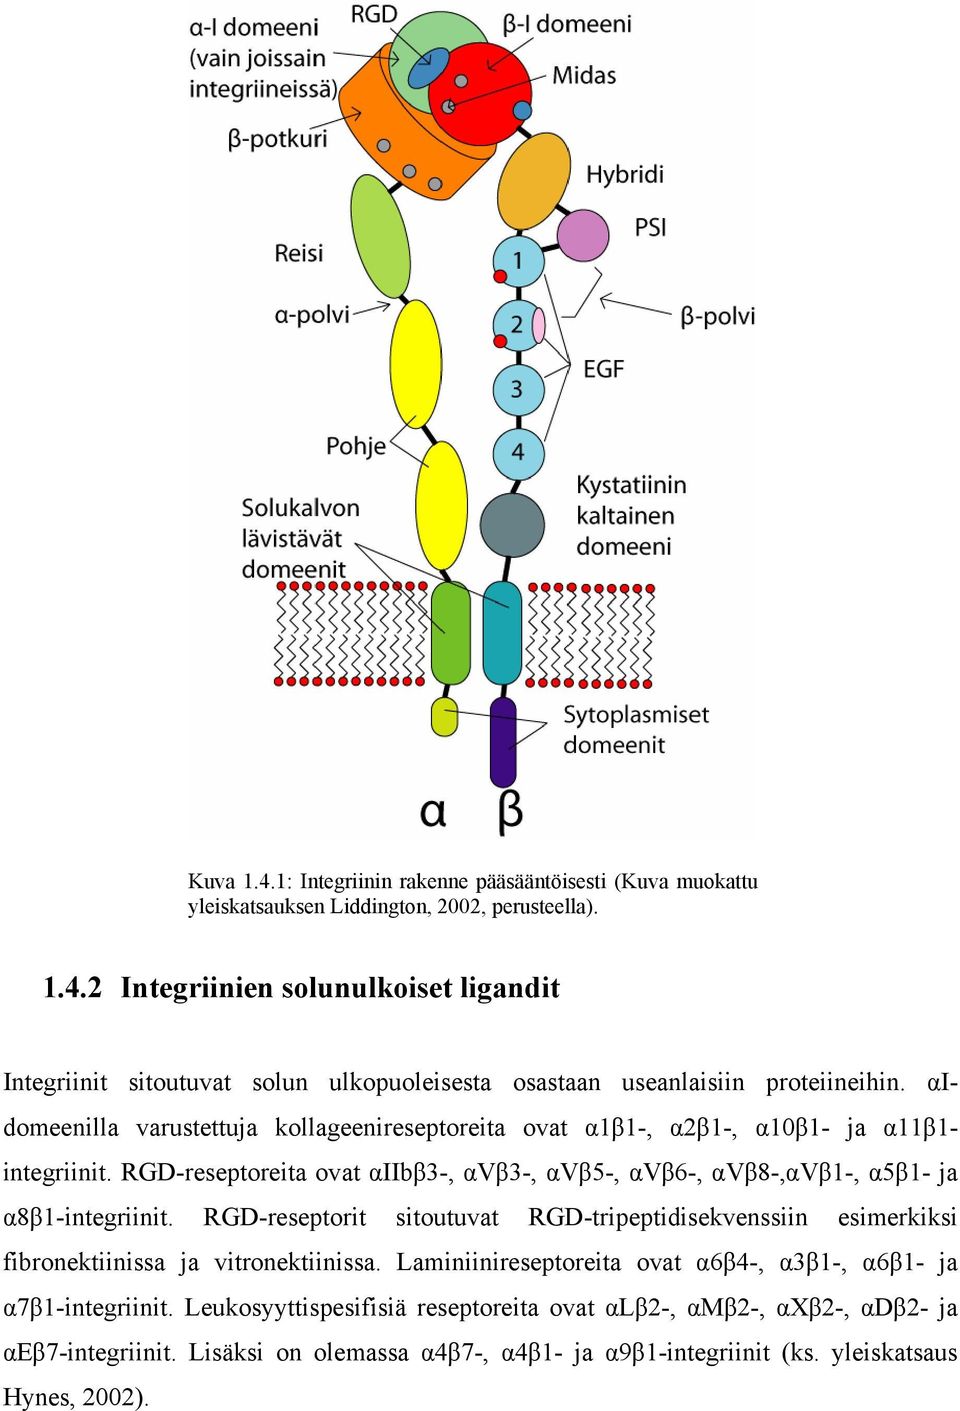 RGD-reseptorit sitoutuvat RGD-tripeptidisekvenssiin esimerkiksi fibronektiinissa ja vitronektiinissa. Laminiinireseptoreita ovat α6β4-, α3β1-, α6β1- ja α7β1-integriinit.